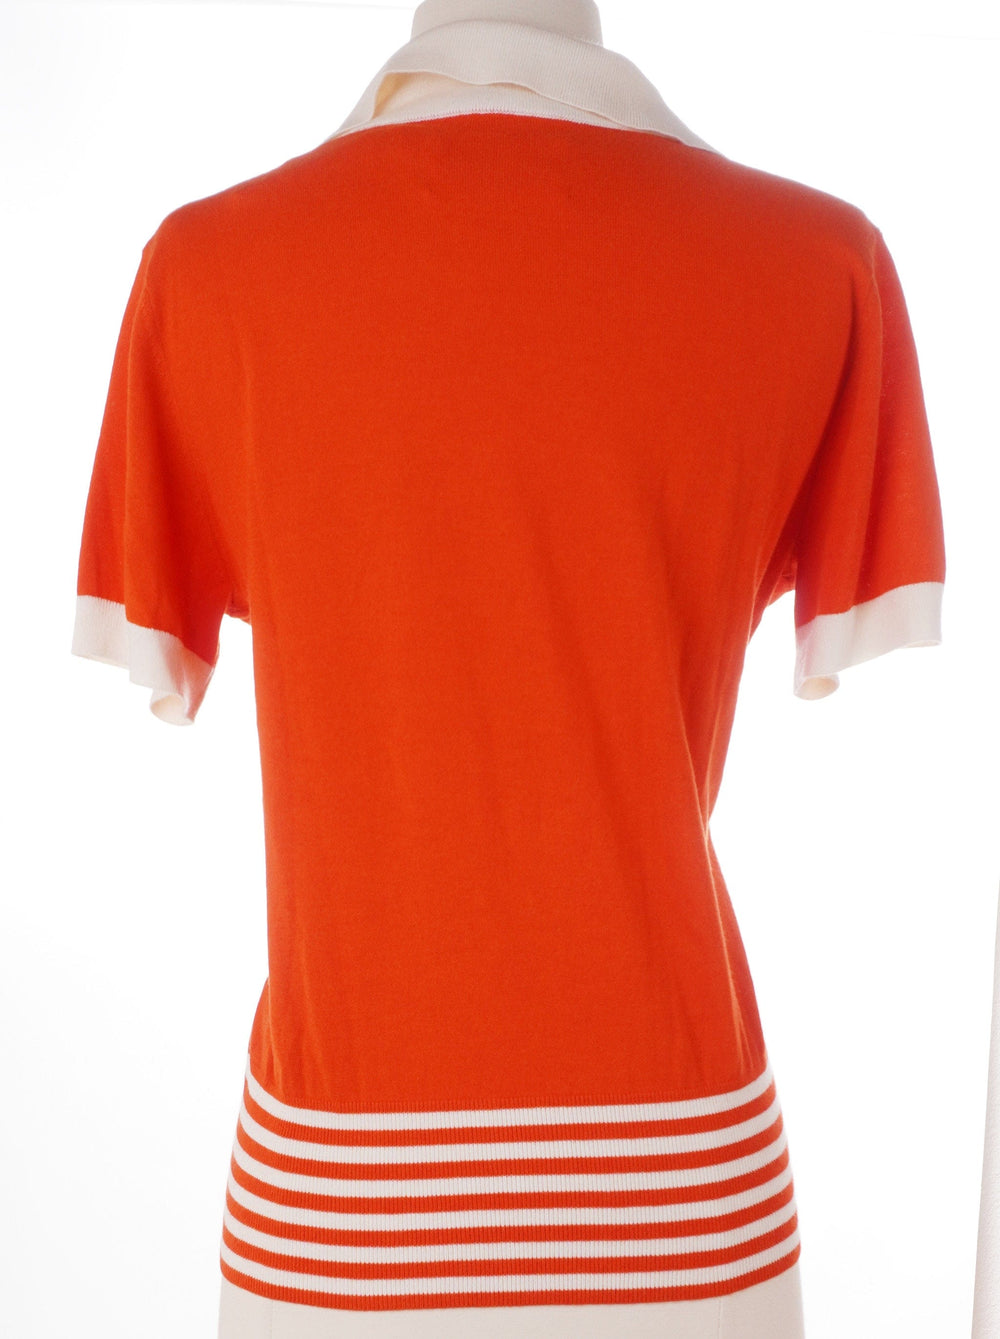 Tory Sport Orange / Large / Consigned Tory Sport Short Sleeve Sweater - Orange - Size Large